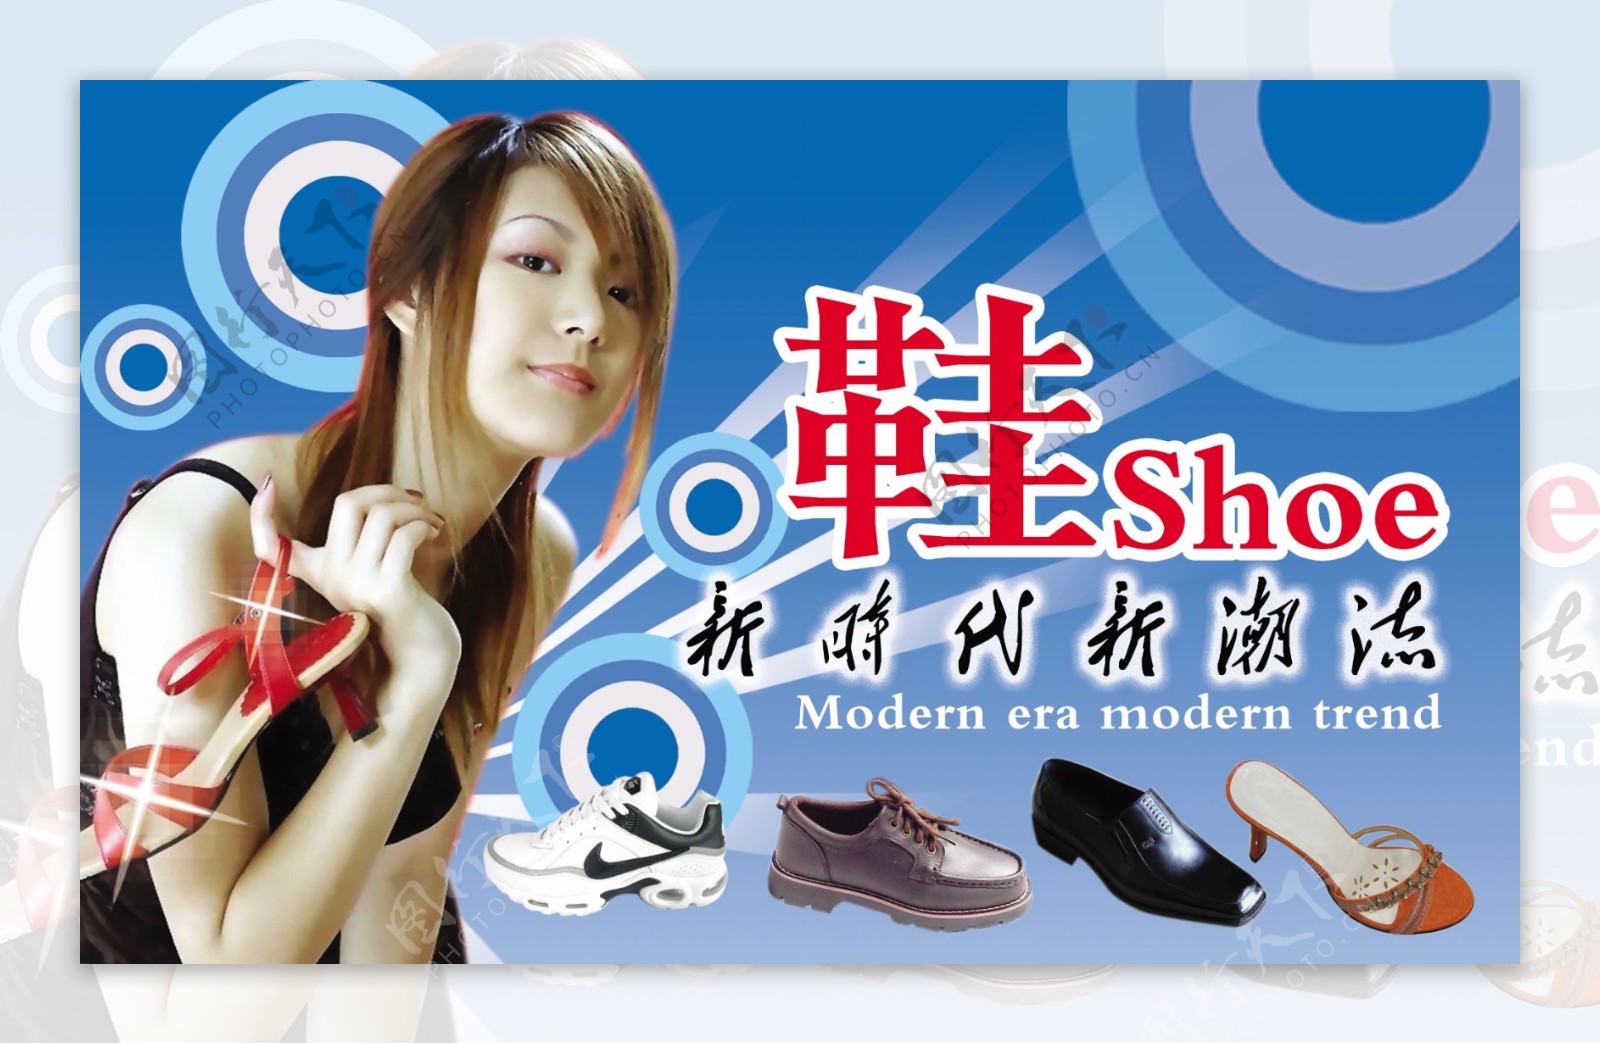 龙腾广告平面广告PSD分层素材源文件鞋子鞋业新时代新潮流